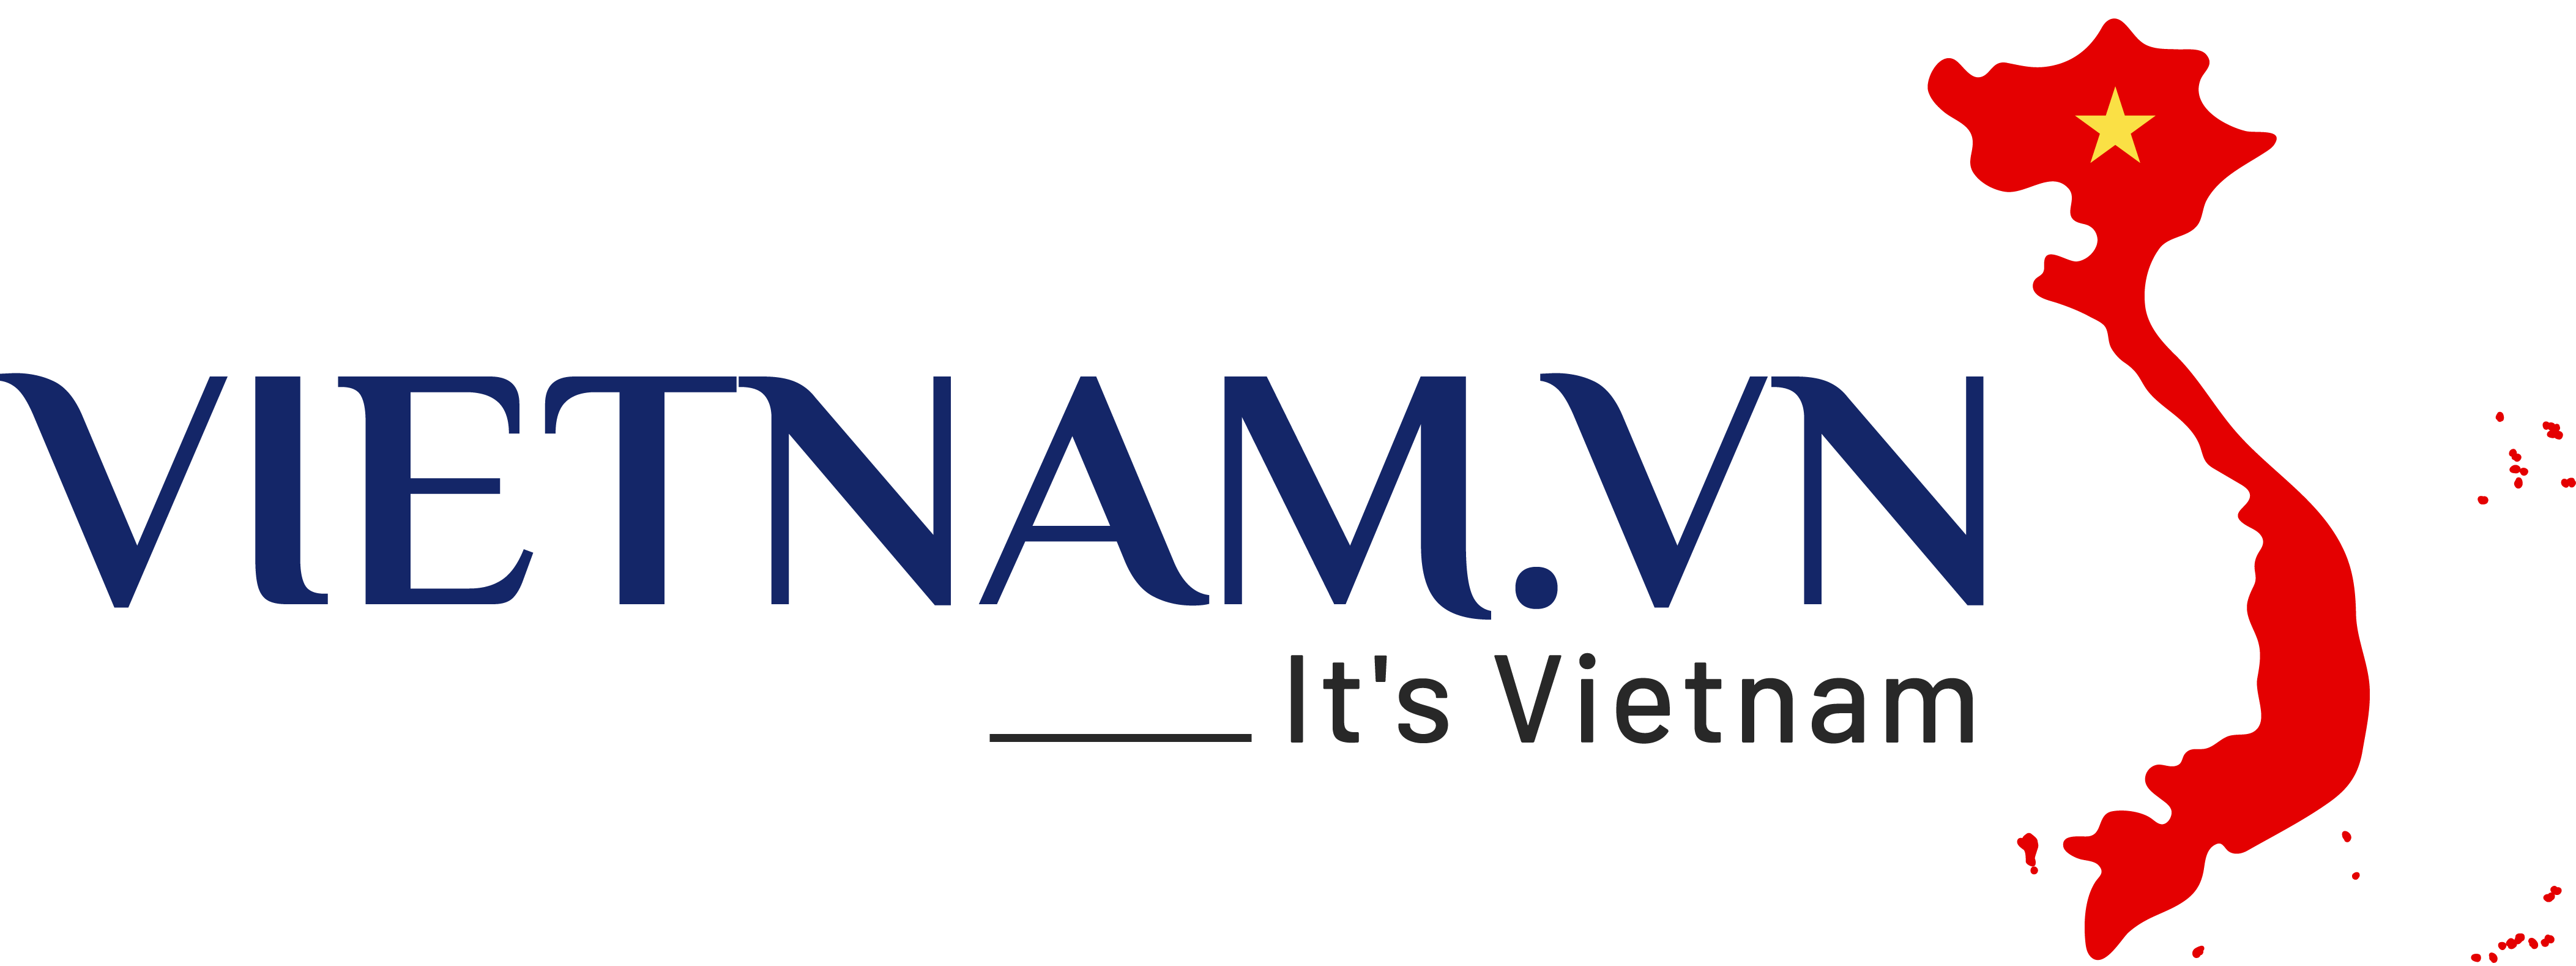 Vietnam.vn Social Network Logo